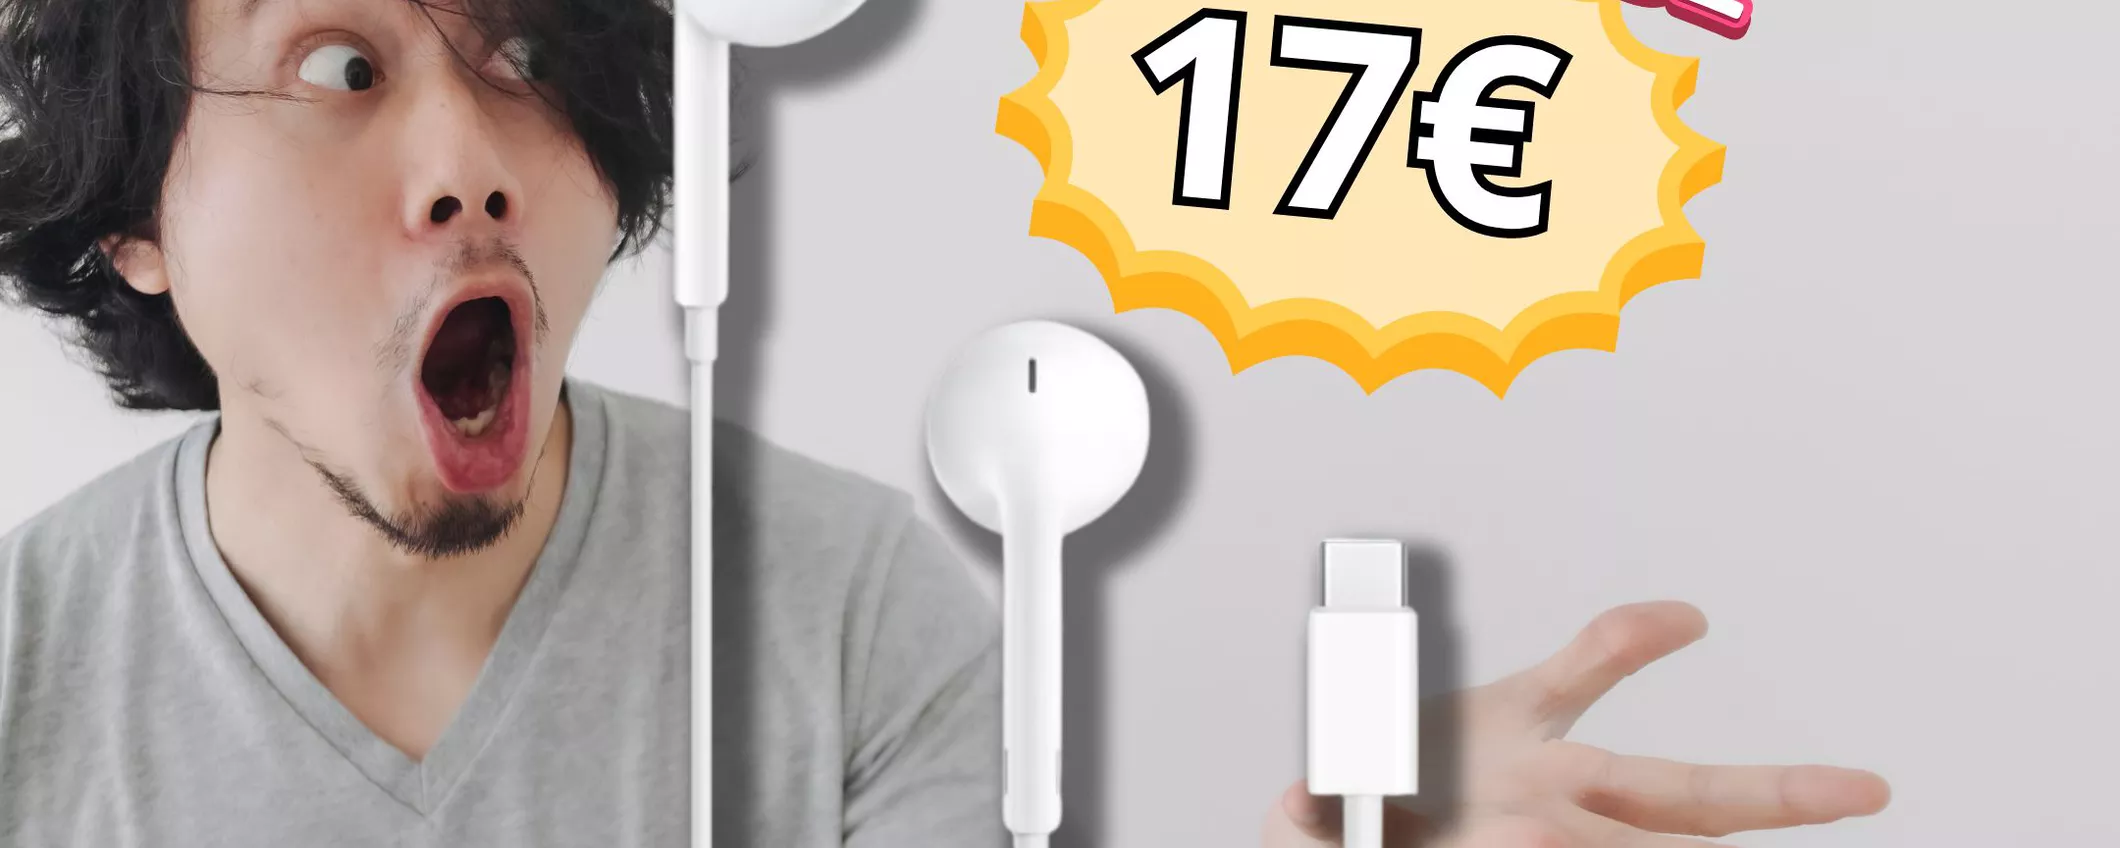 MA CHE PREZZO è? Solo 17€ per Apple EarPods originali su Amazon!